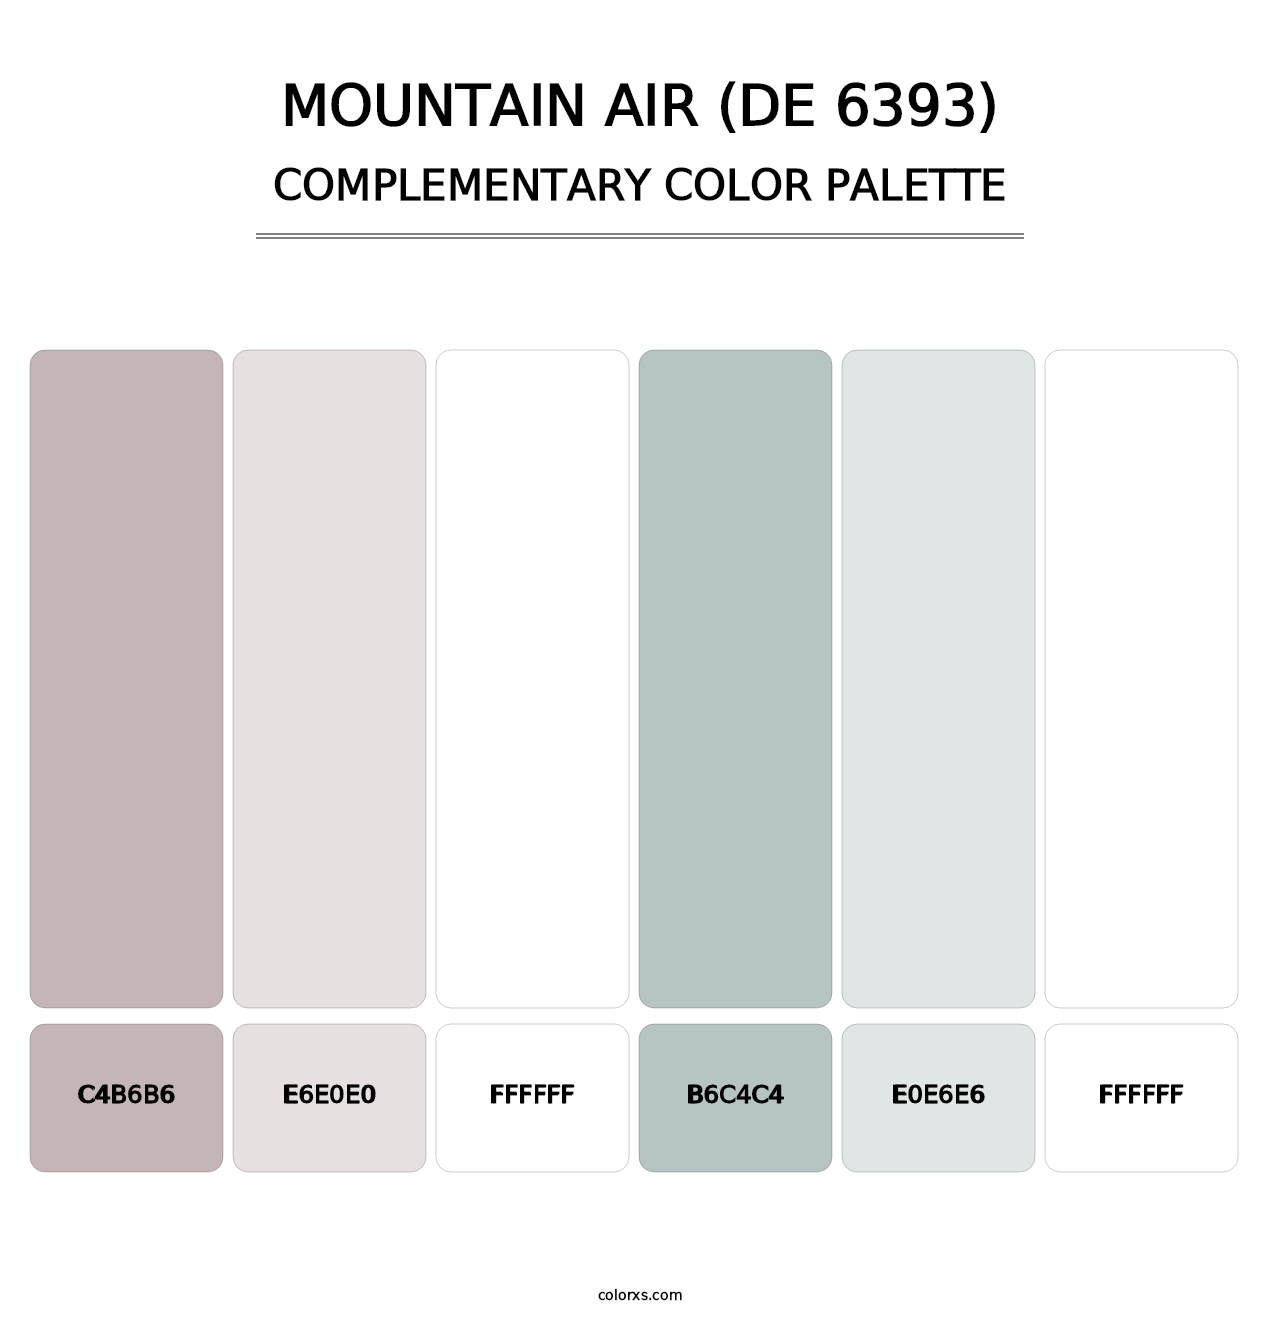 Mountain Air (DE 6393) - Complementary Color Palette